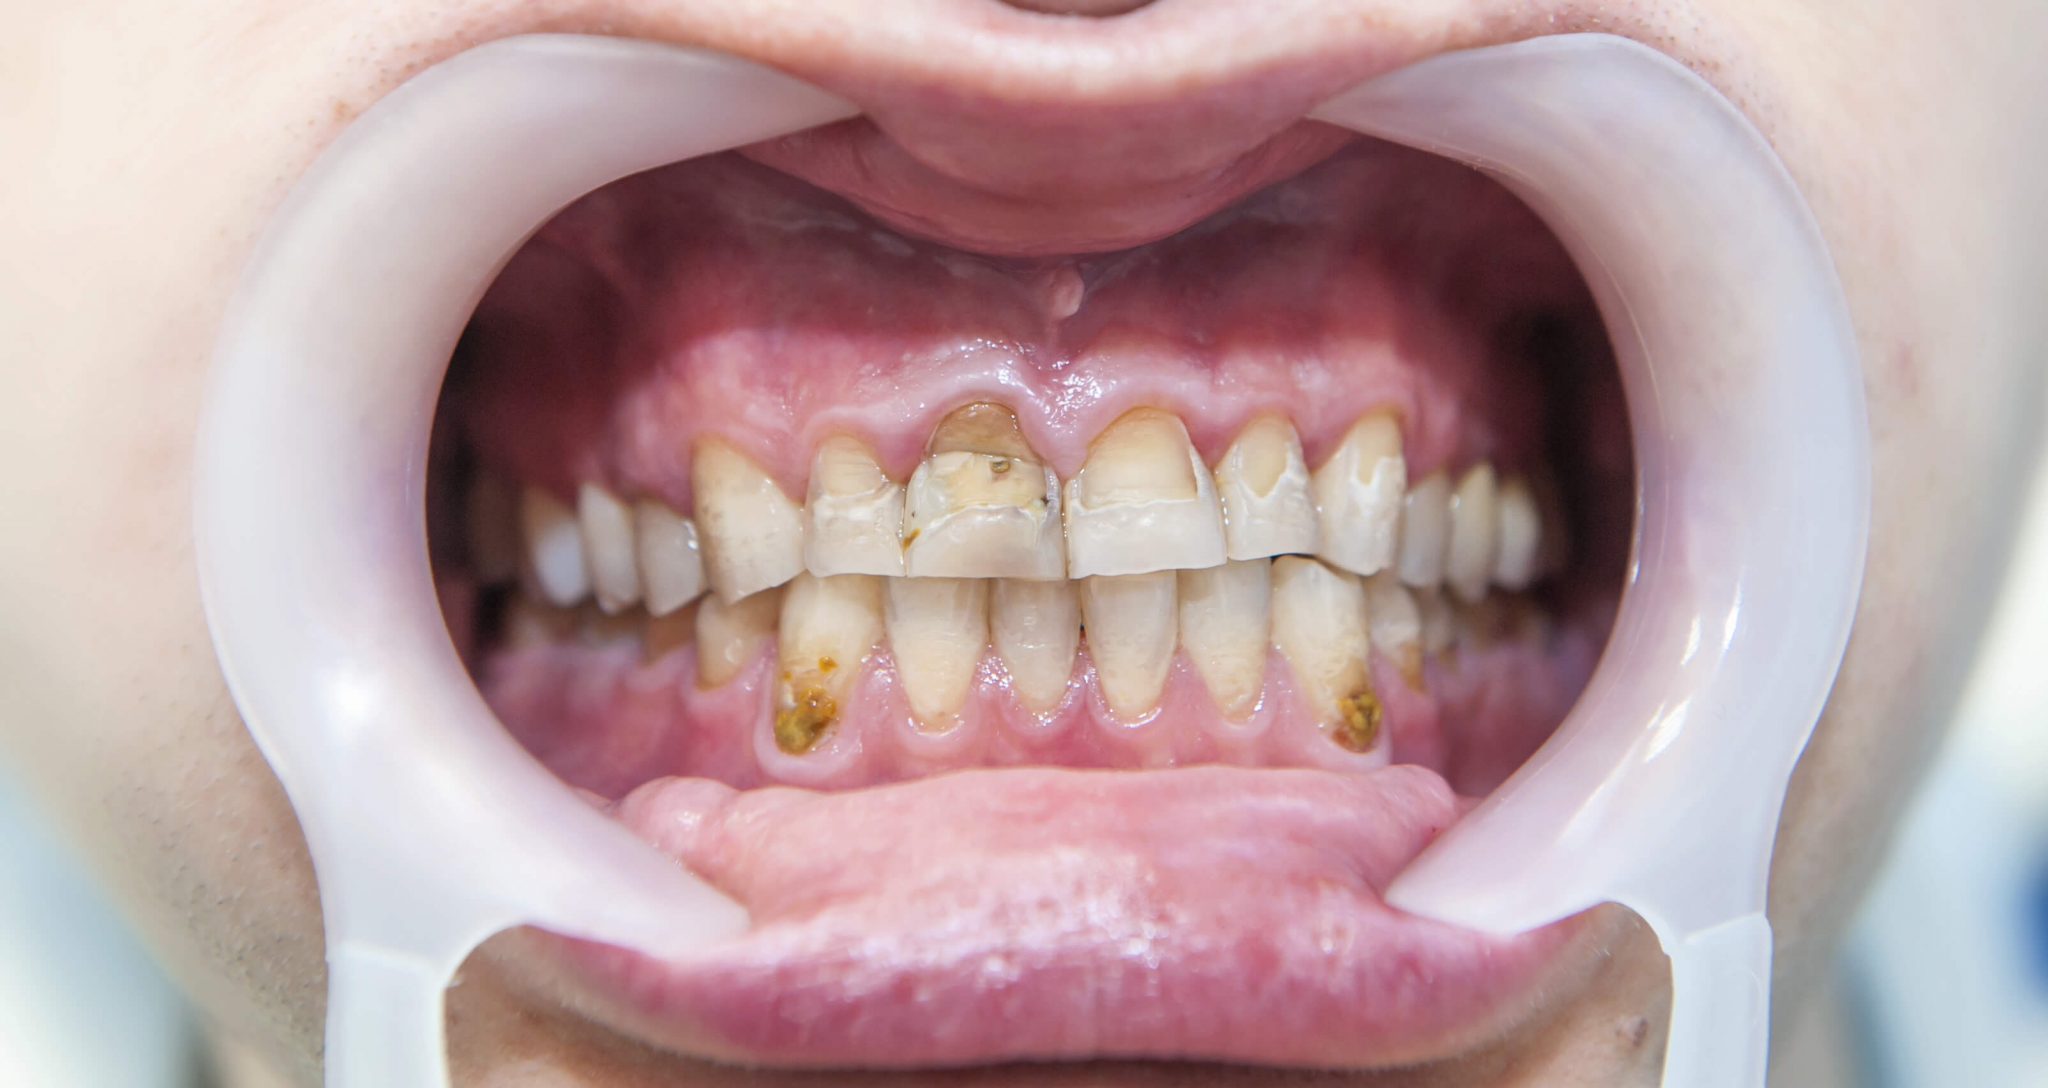 Dental Fluoride Treatment Side Effects